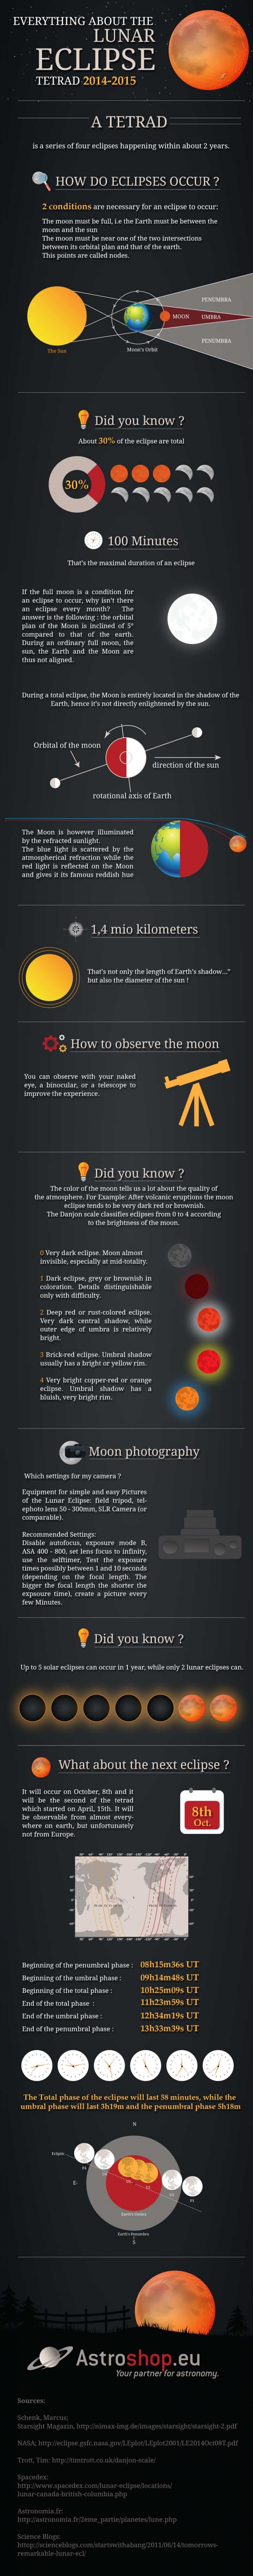 Lunar_Eclipse_Infographic_EN